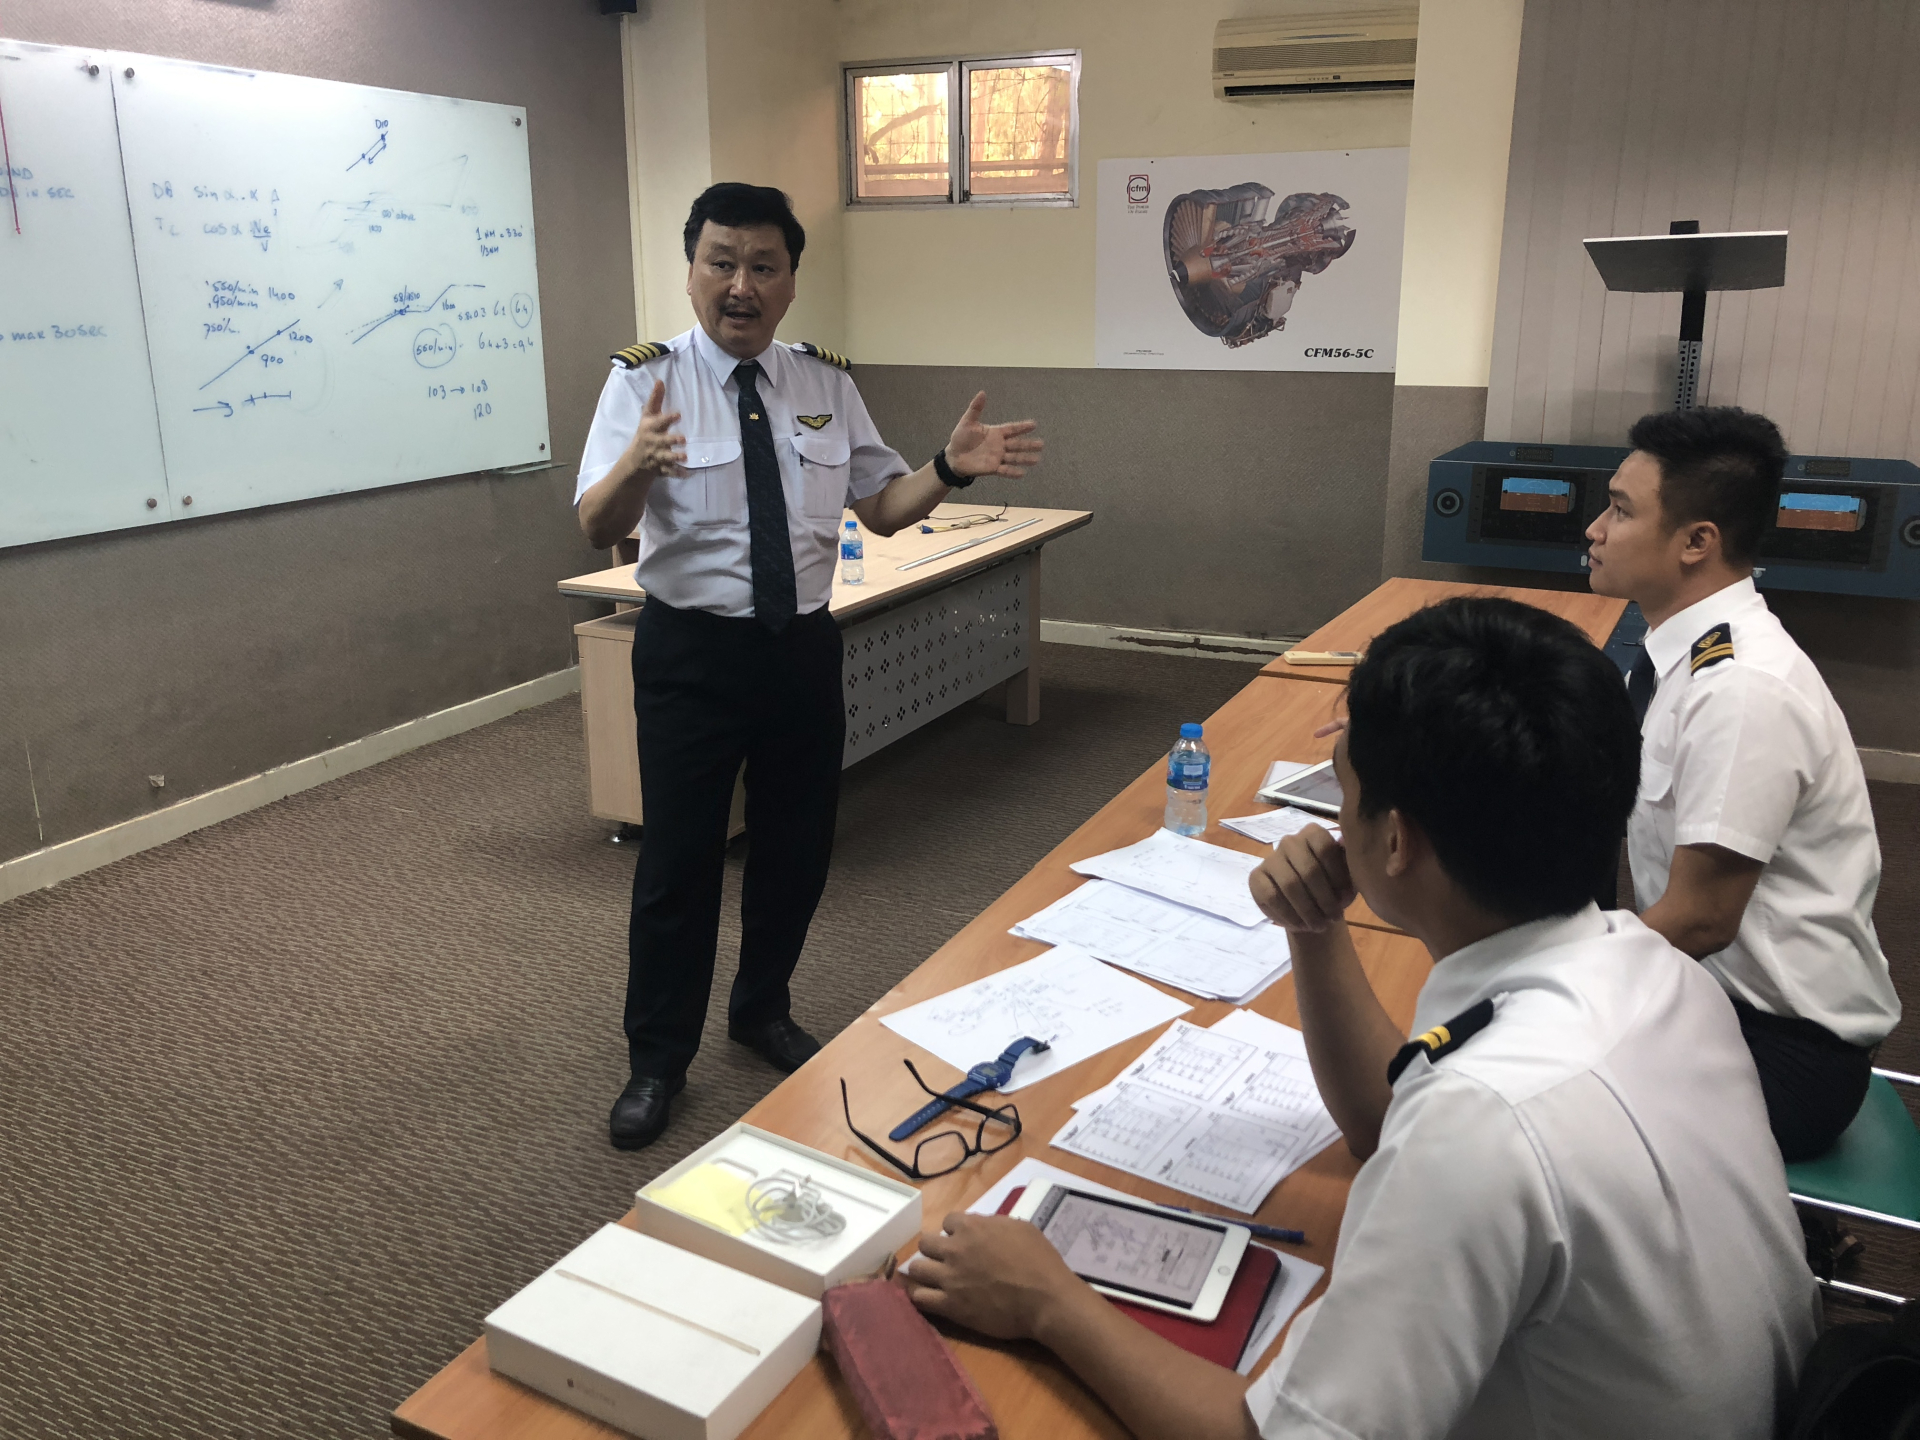 Ngôi trường duy nhất ở Việt Nam đào tạo phi công cơ bản, muốn học phi công phải thi tuyển thế nào? - ảnh 2